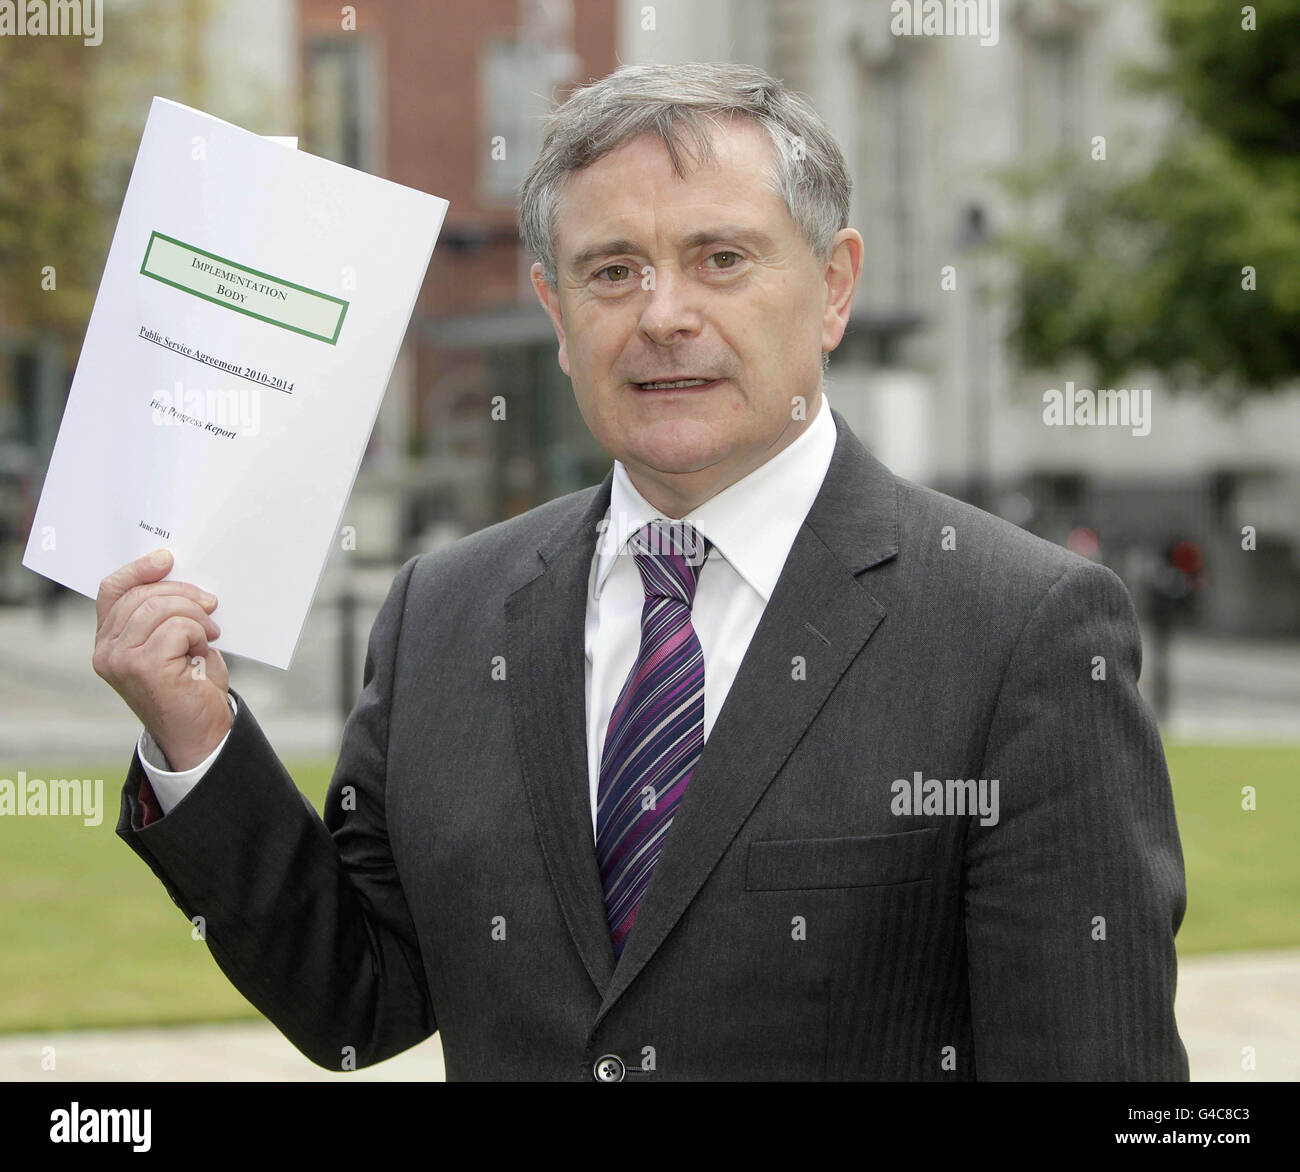 Il ministro delle spese pubbliche e delle riforme Brendan Howlin si rivolge ai media sulla pubblicazione della prima revisione dell'attuazione dell'accordo di Croke Park presso gli edifici governativi di Dublino. Foto Stock